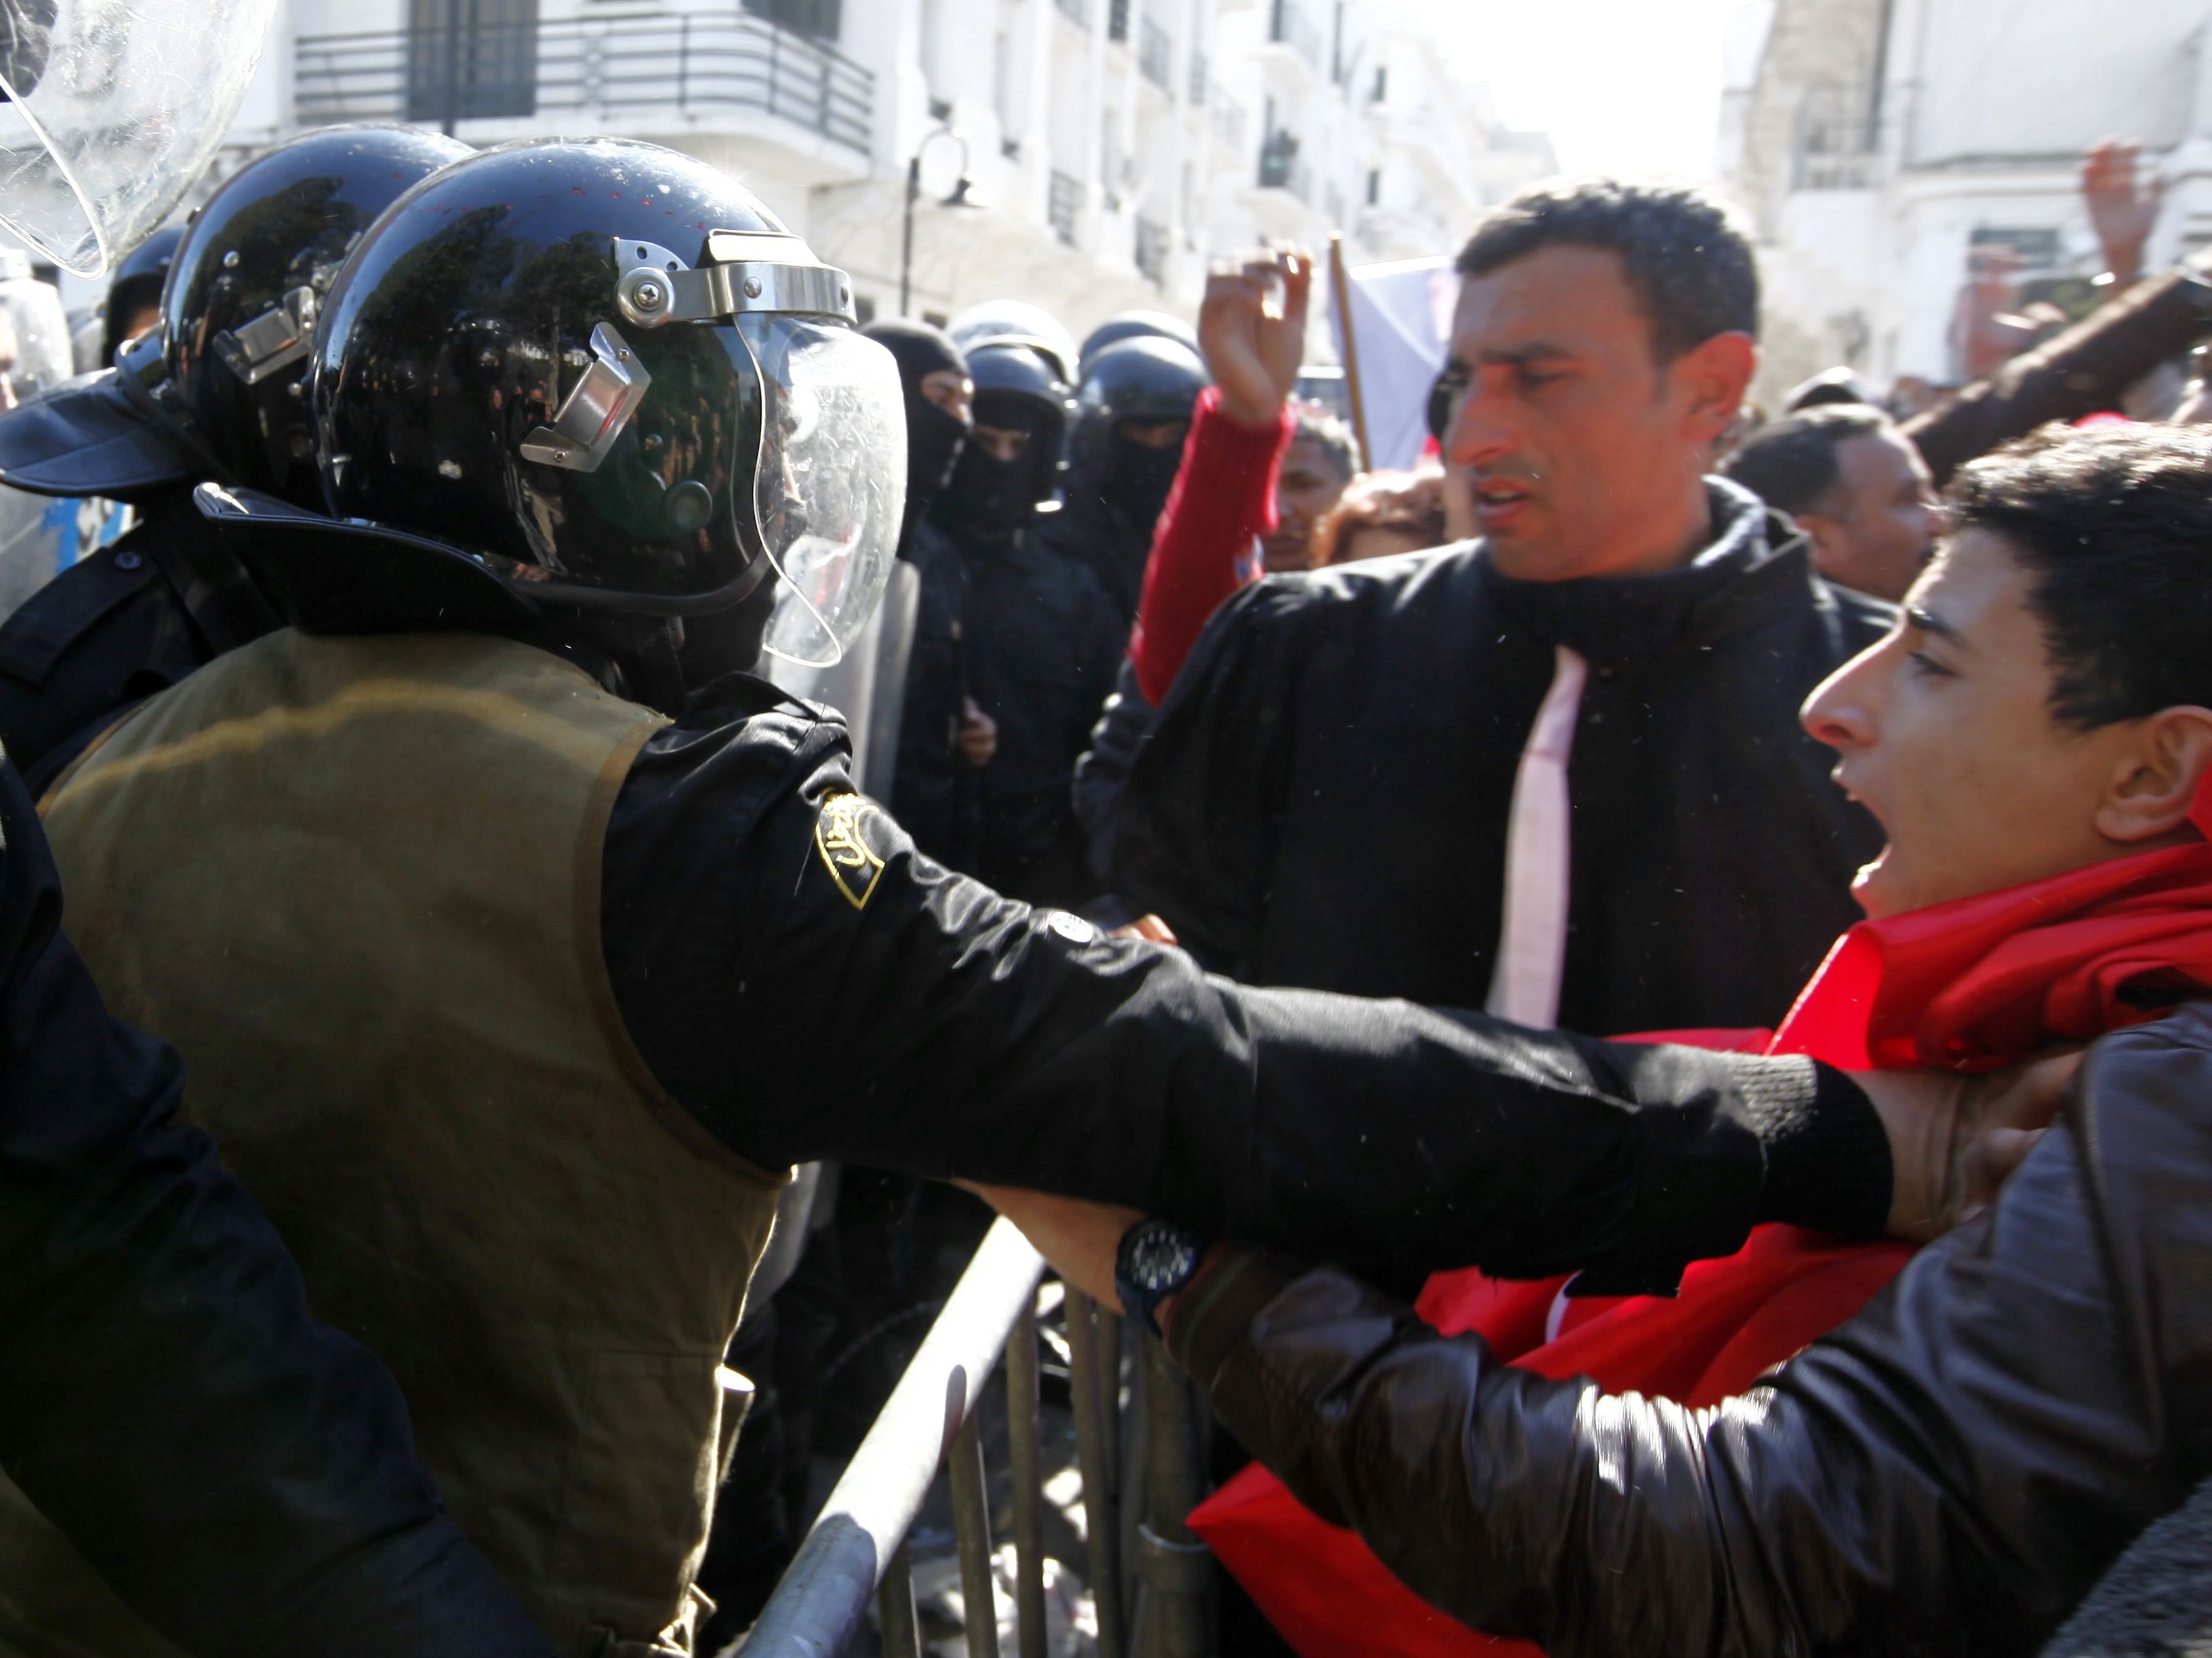 Des manifestants tunisiens affrontent la police antiémeute pendant une manifestation, le 6 février 2013, à l’extérieur de l’immeuble abritant le ministère de l’Intérieur à Tunis, après le décès de Chokri Belaid, un dirigeant de l’opposition tunisienne 